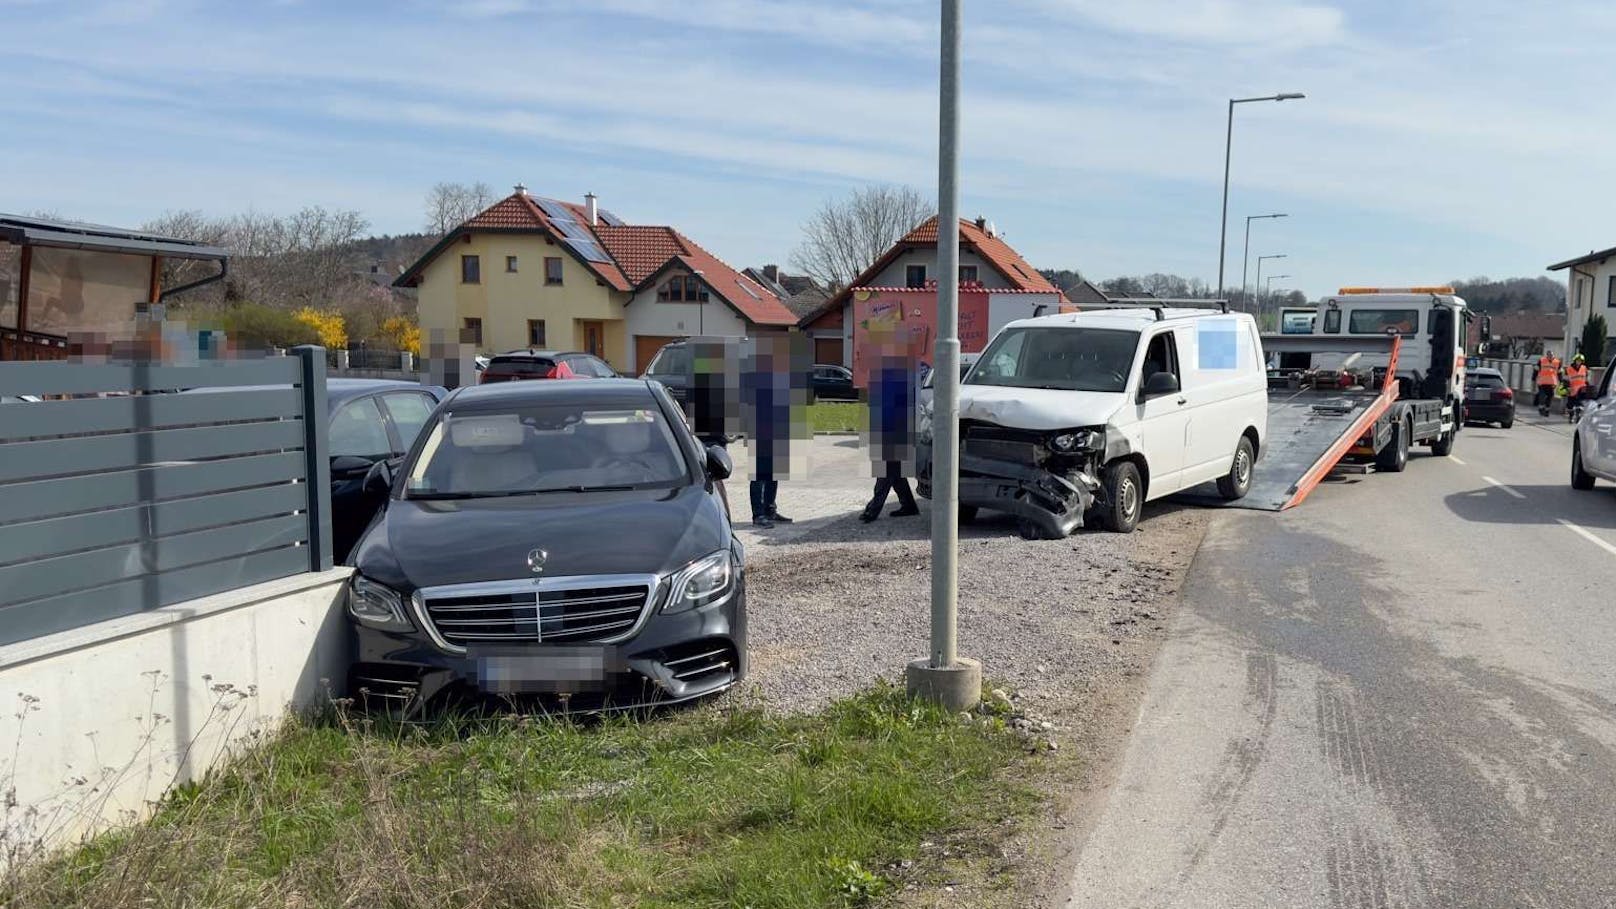 Spektakulärer Crash mit 4 Fahrzeugen in Purgstall